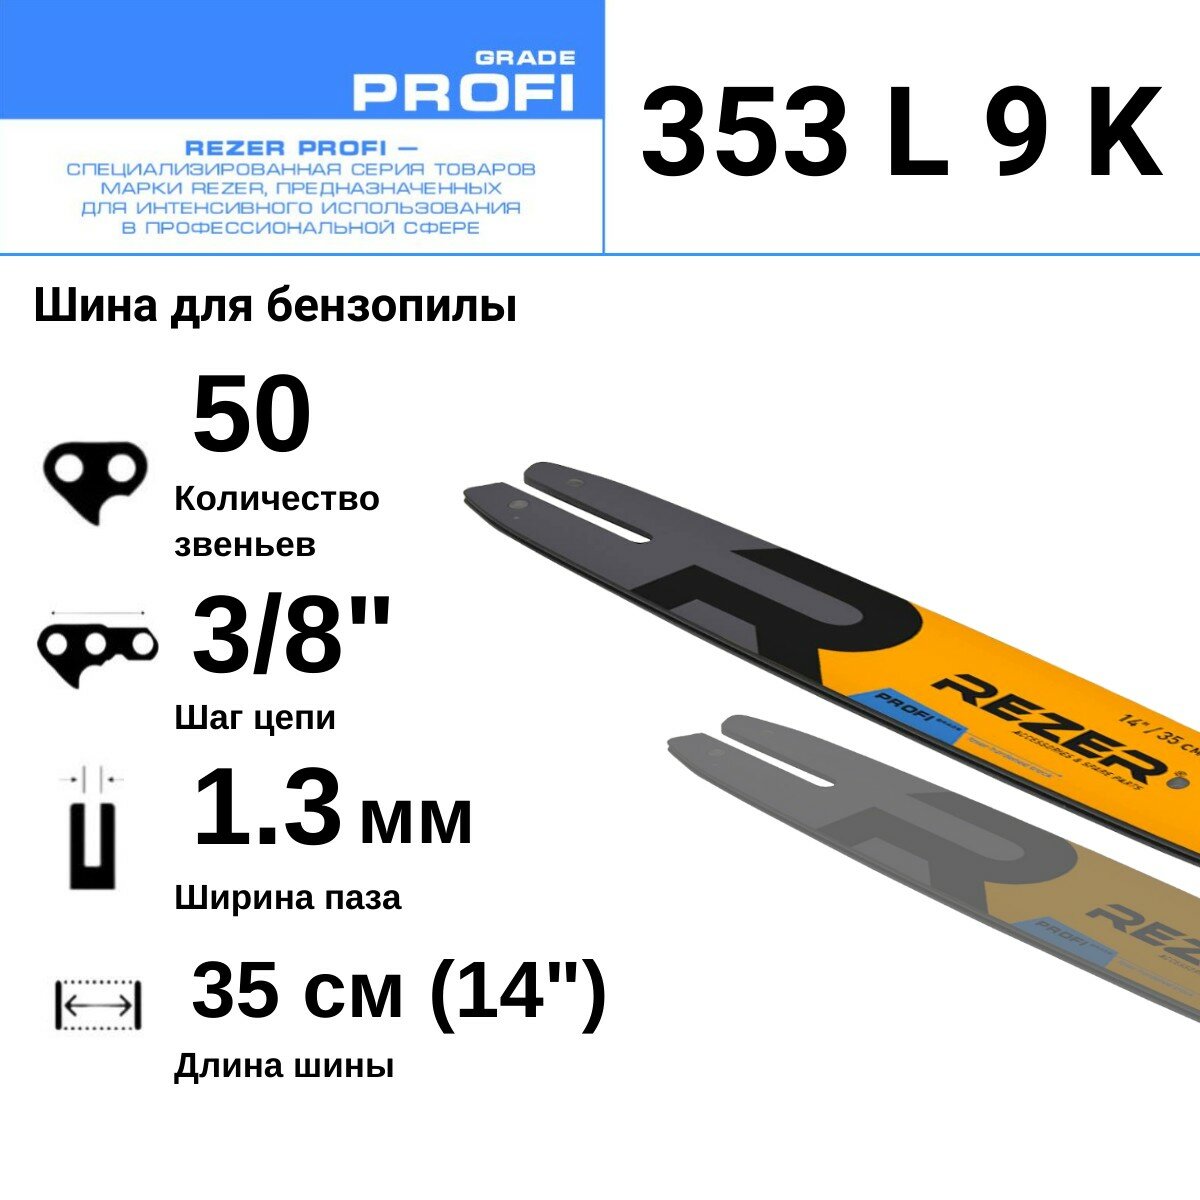 Rezer PROFI 353 L 9 K Шина для бензопилы STIHL (Штиль) MS 180, 50 звеньев, длина шины 14"( 35 см) , шаг 3/8", ширина паза 1.3 мм